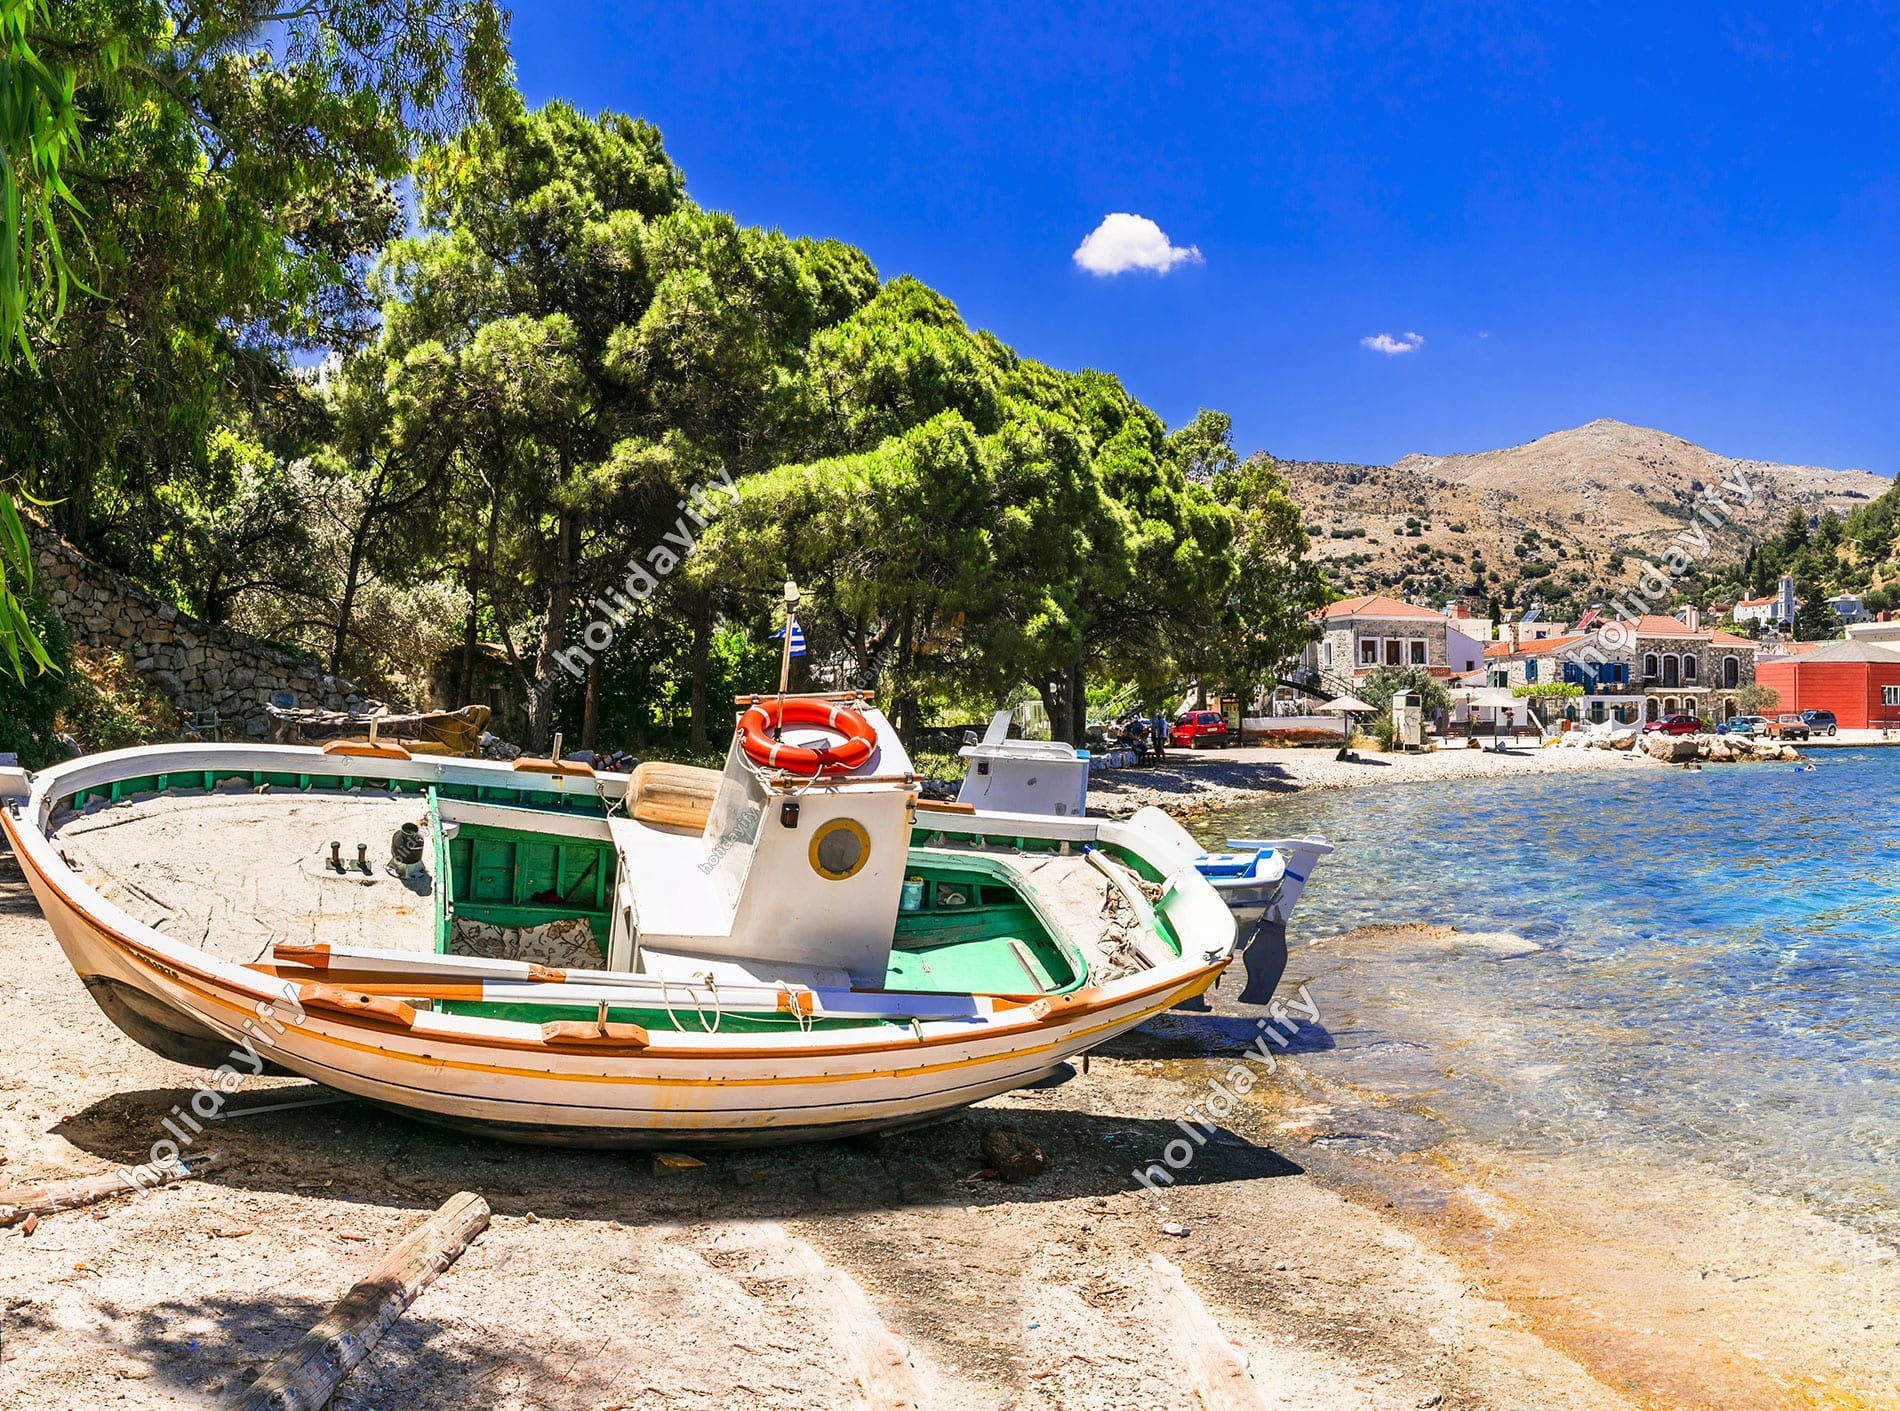 Île de Chios 2022 : Guide de voyage actualisé pour cet été - Île de Chios 2022 : Guide de voyage actualisé pour cet été